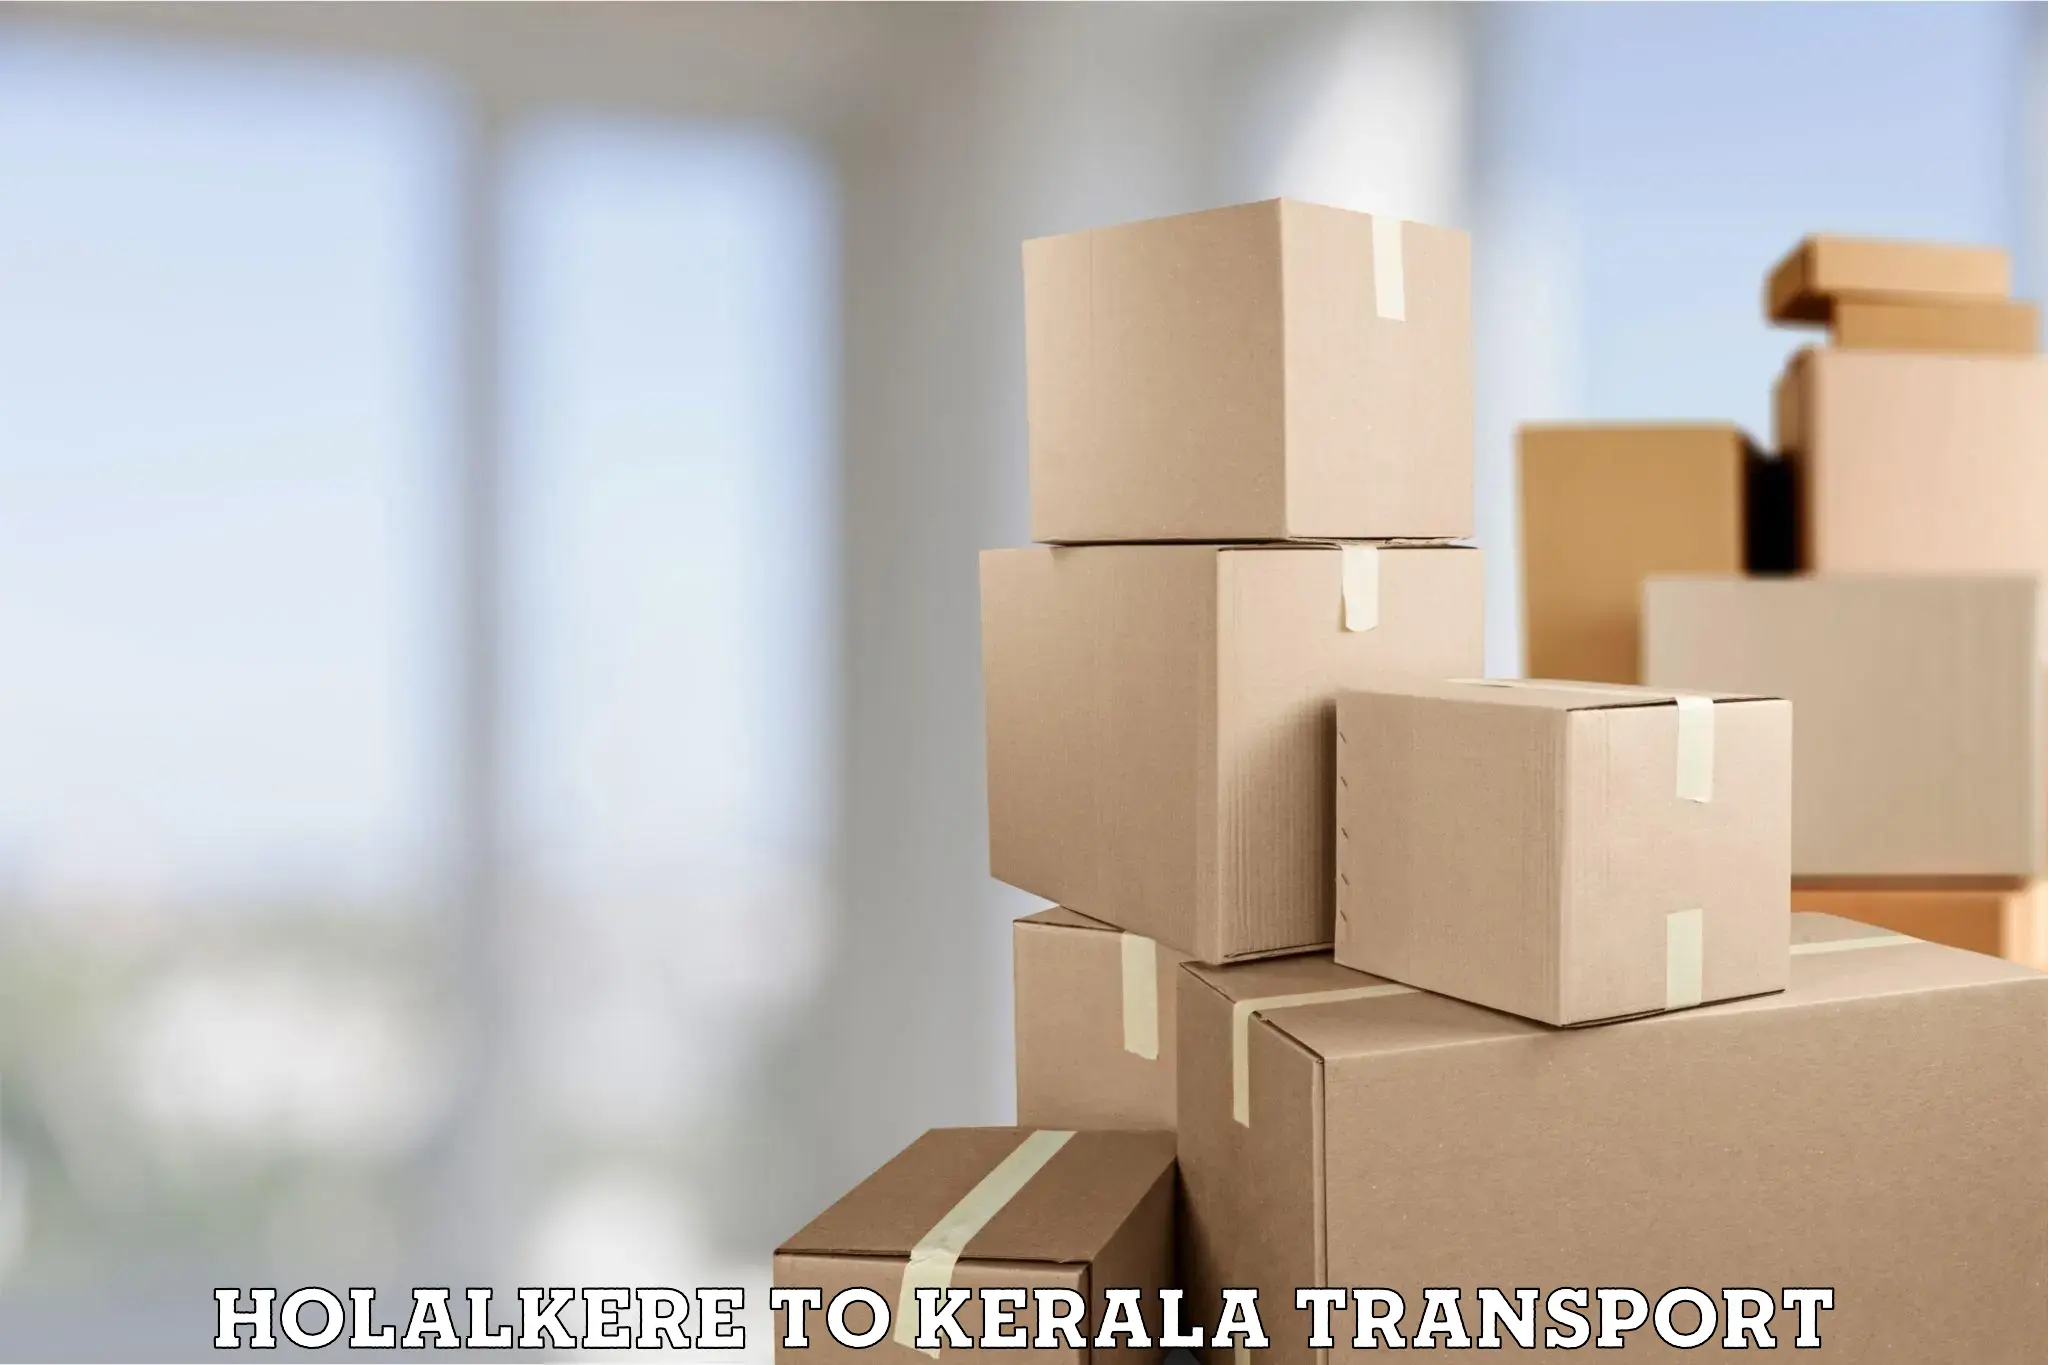 Nationwide transport services Holalkere to Mundakayam